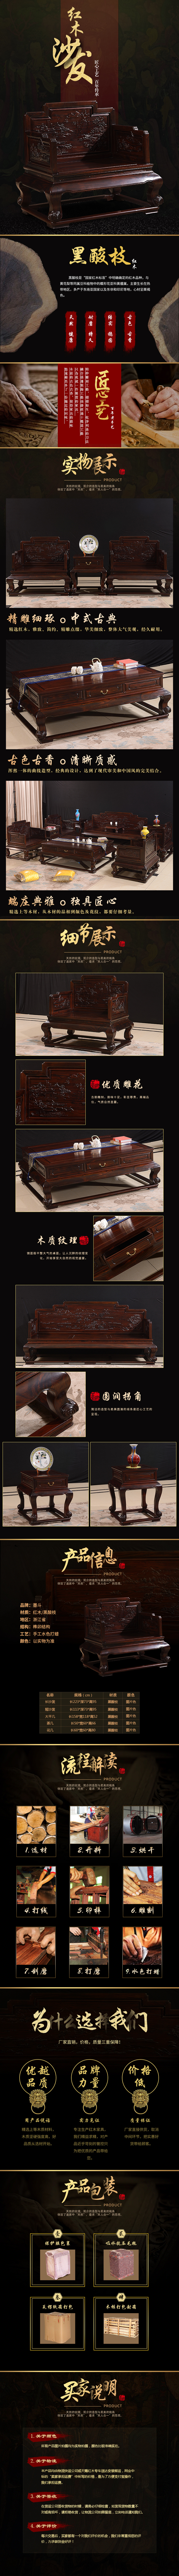 淘宝美工海浪中国风红木家具作品